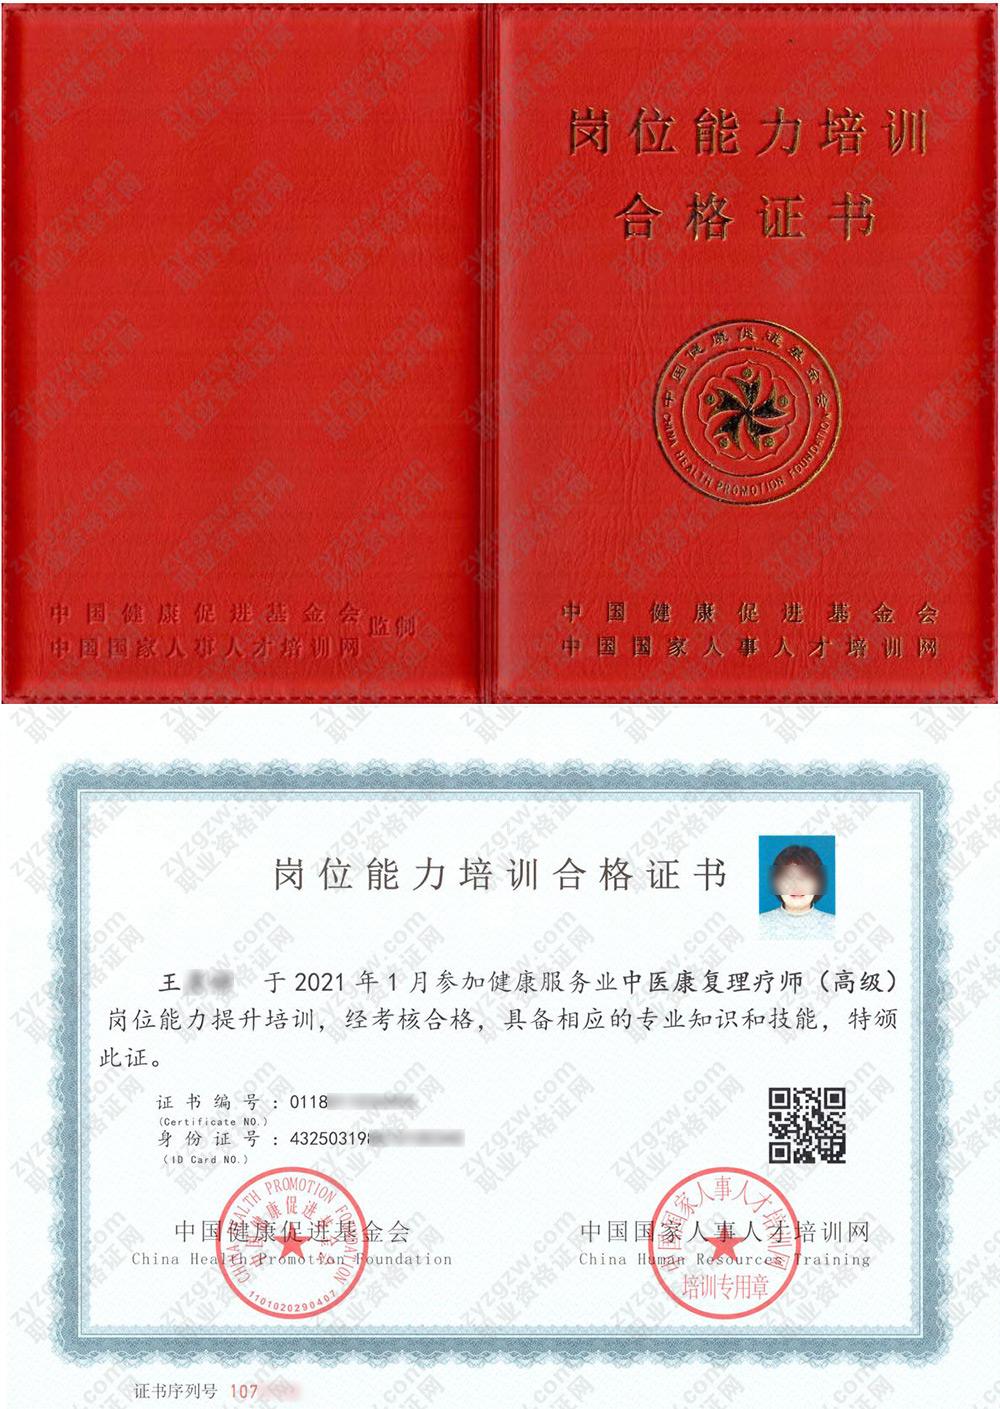 中国国家人事人才培训网 中医康复理疗师 岗位能力培训合格证书